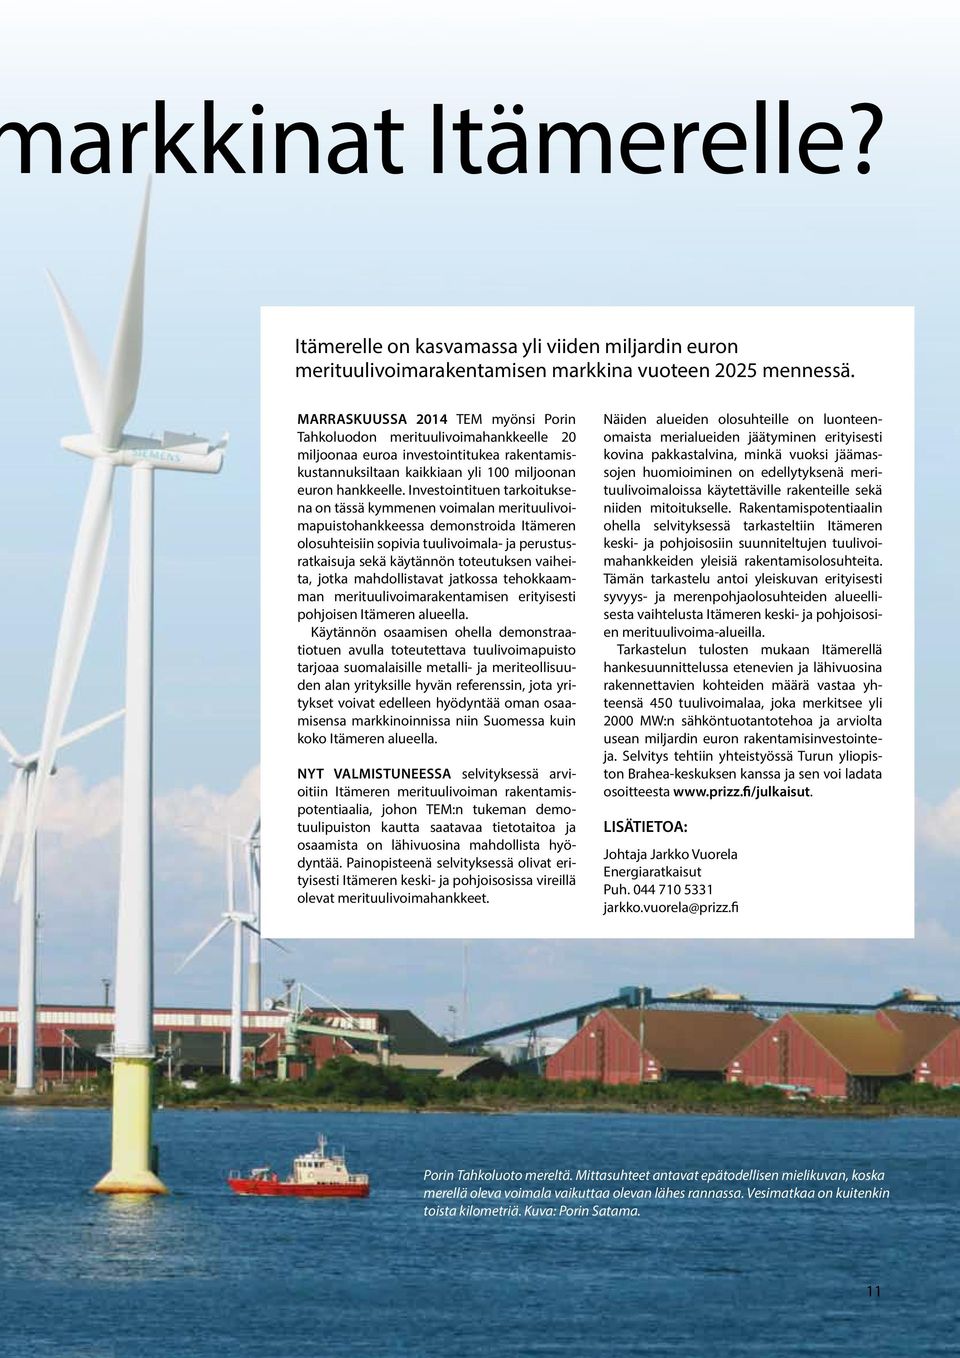 Investointituen tarkoituksena on tässä kymmenen voimalan merituulivoimapuistohankkeessa demonstroida Itämeren olosuhteisiin sopivia tuulivoimala- ja perustusratkaisuja sekä käytännön toteutuksen